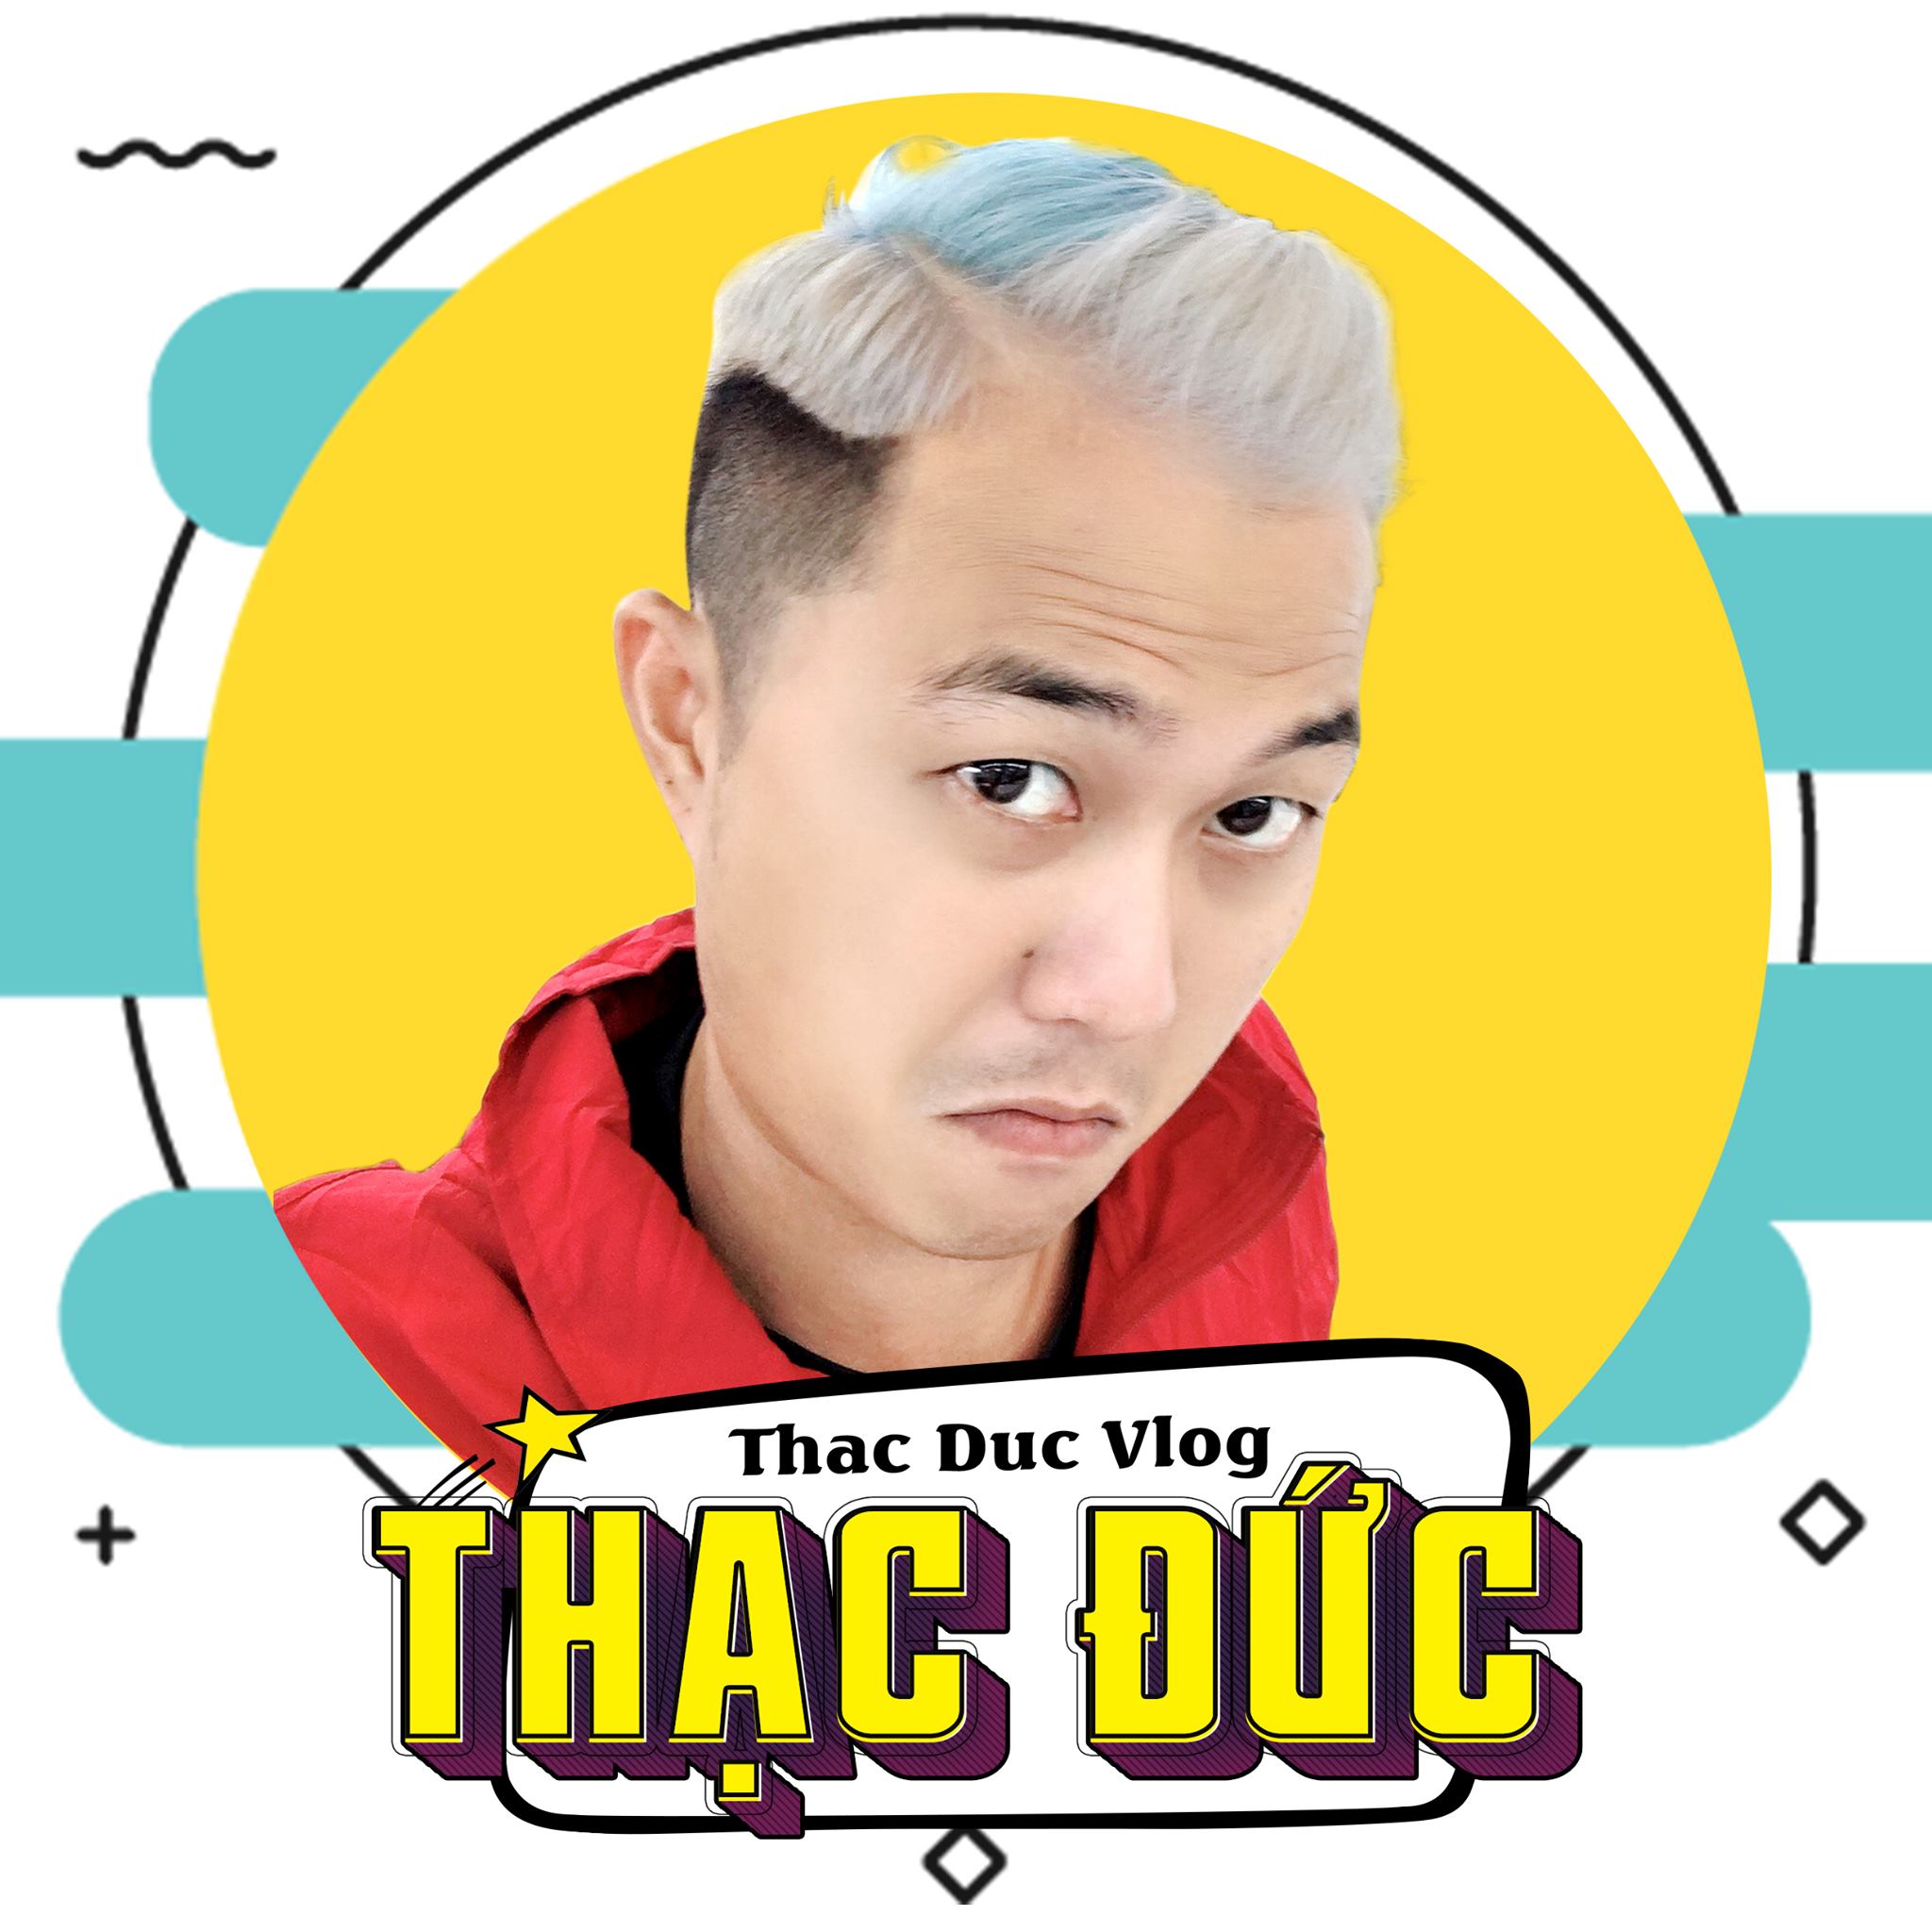 Image of Nguyen Thac Duc